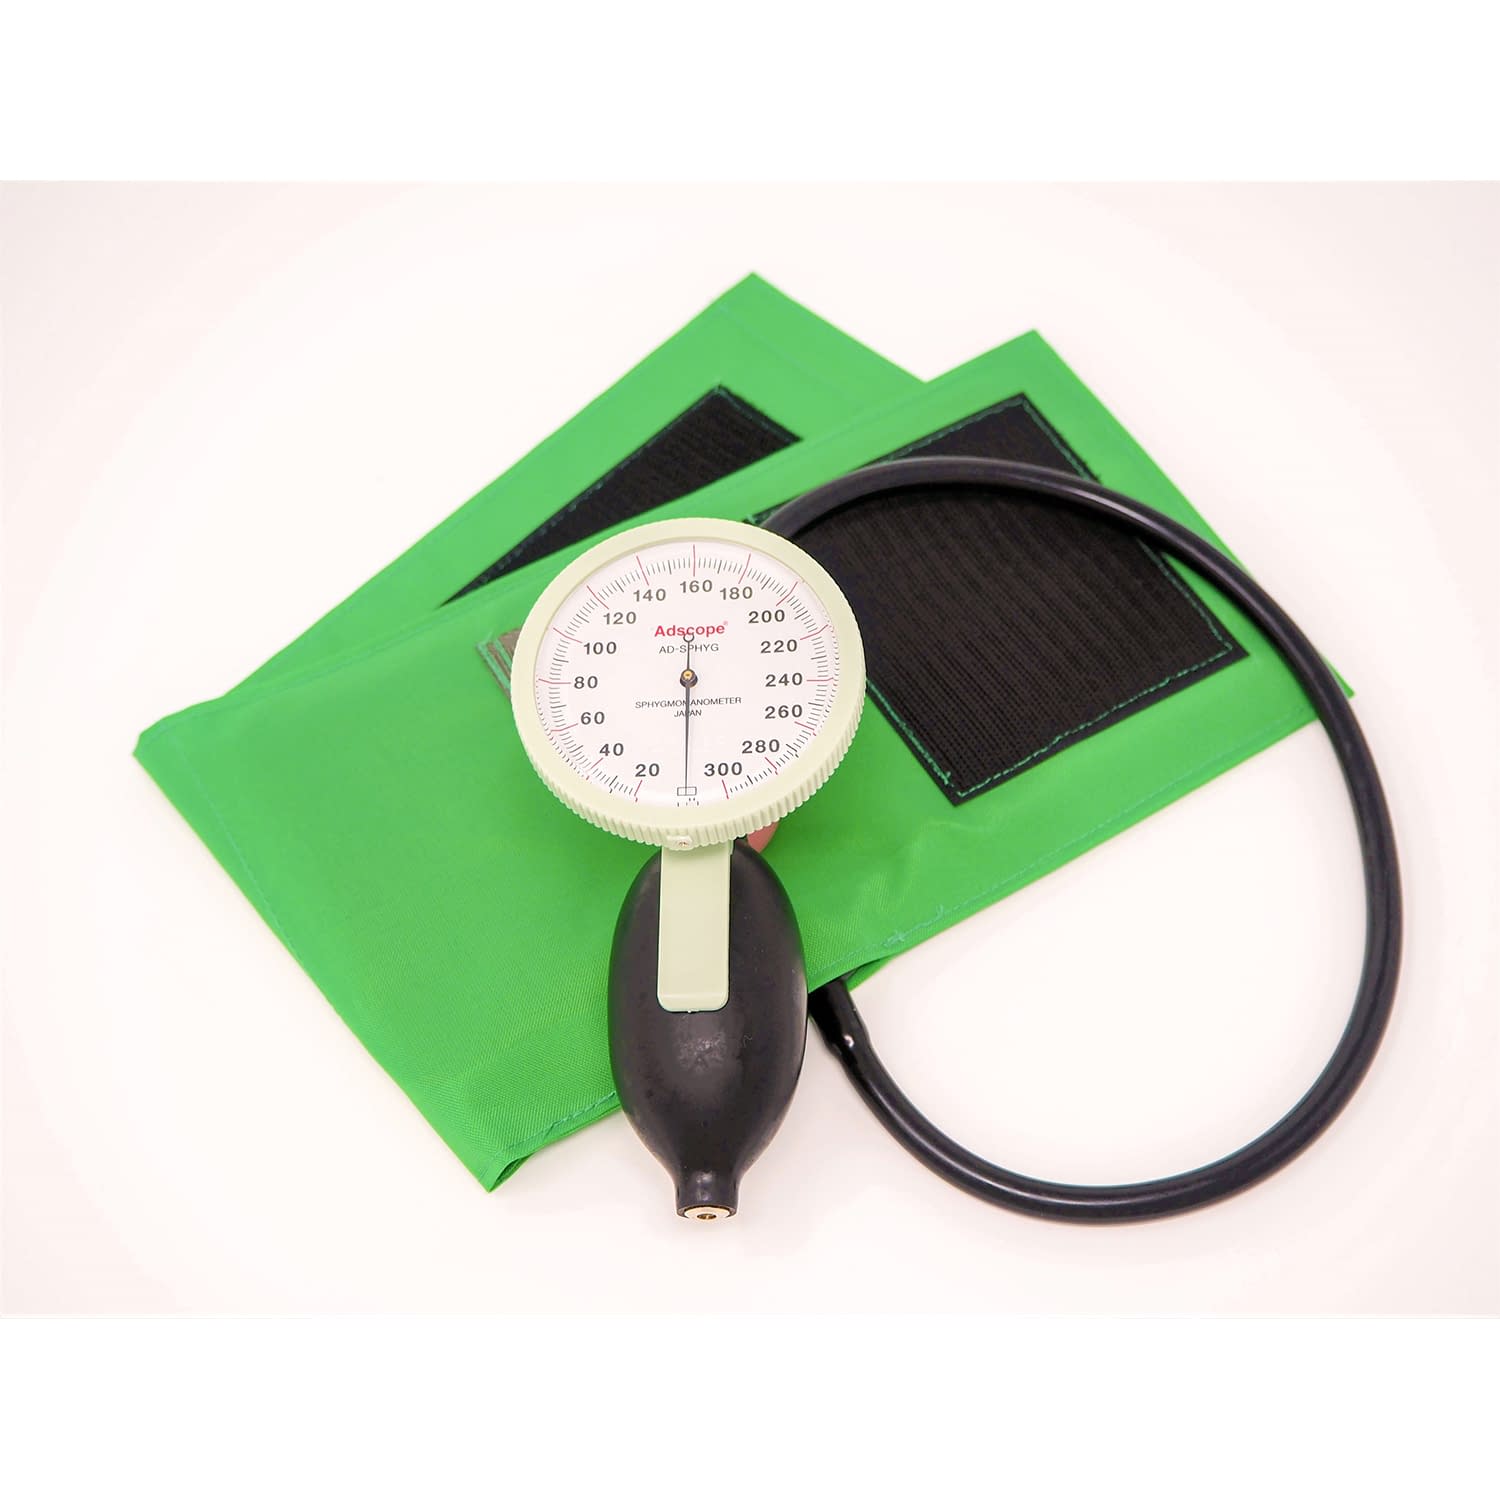 (23-7093-02)ラージゲージアネロイド血圧計 ADC-226GR(ｸﾞﾘｰﾝ)ﾜﾝﾊﾝ ﾗｰｼﾞｹﾞｰｼﾞｱﾈﾛｲﾄﾞｹﾂｱﾂｹ【1台単位】【2019年カタログ商品】